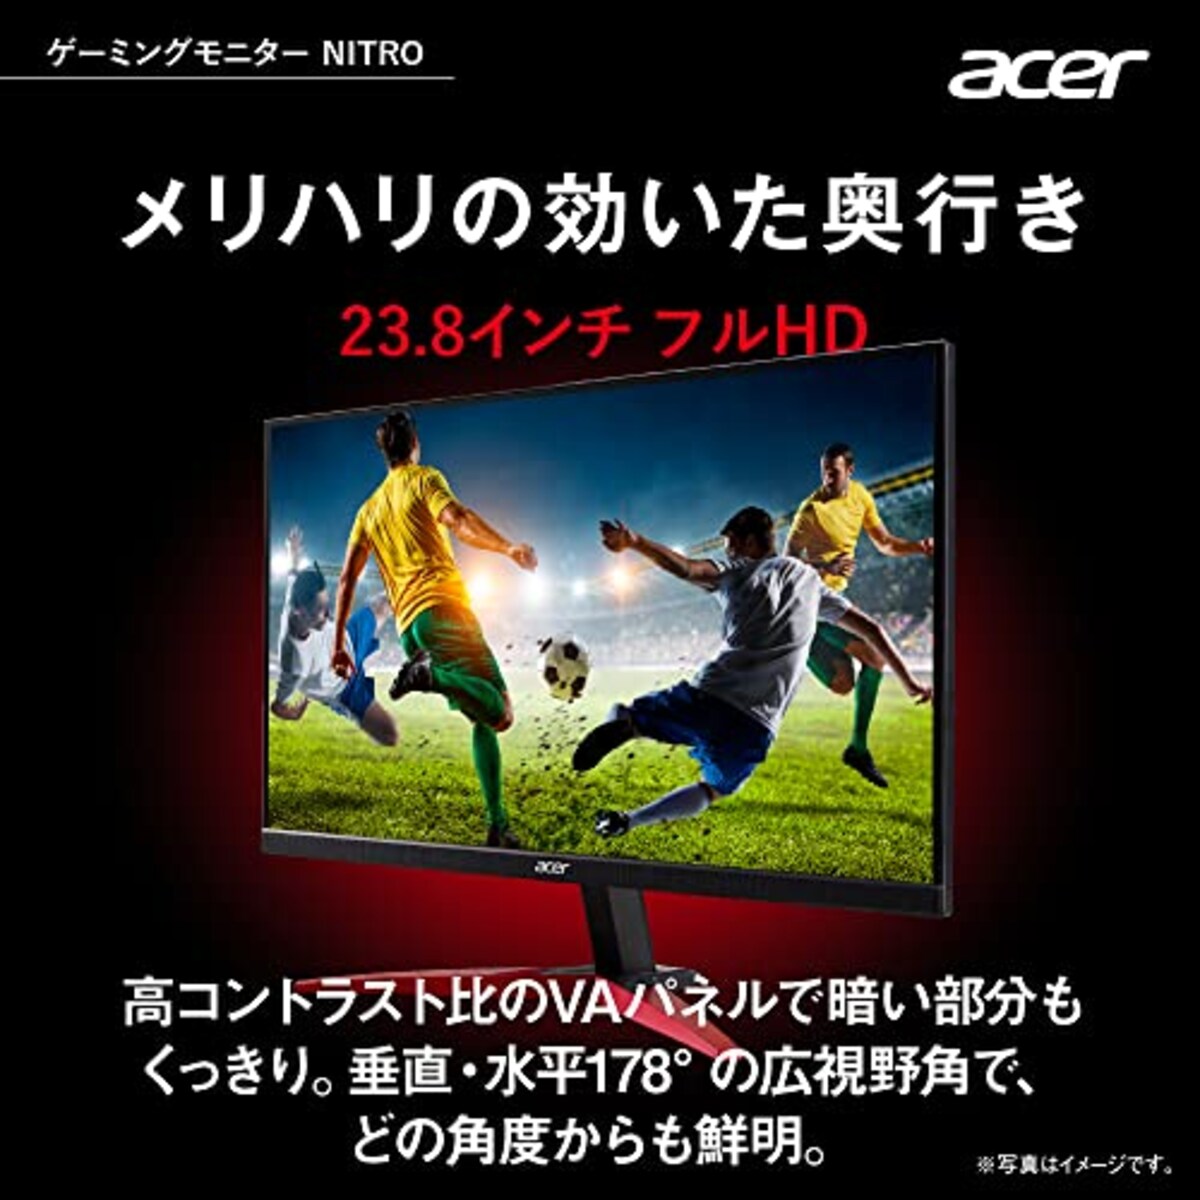  日本エイサー 【Amazon.co.jp限定】 Acer ゲーミングモニター Nitro KG241YHbmiix 23.8インチ VA 非光沢 フルHD 100Hz 1ms(VRB) HDMI ミニD-Sub15 VESAマウント対応 スピーカー内蔵 ヘッドホン端子 AMD FreeSync画像2 